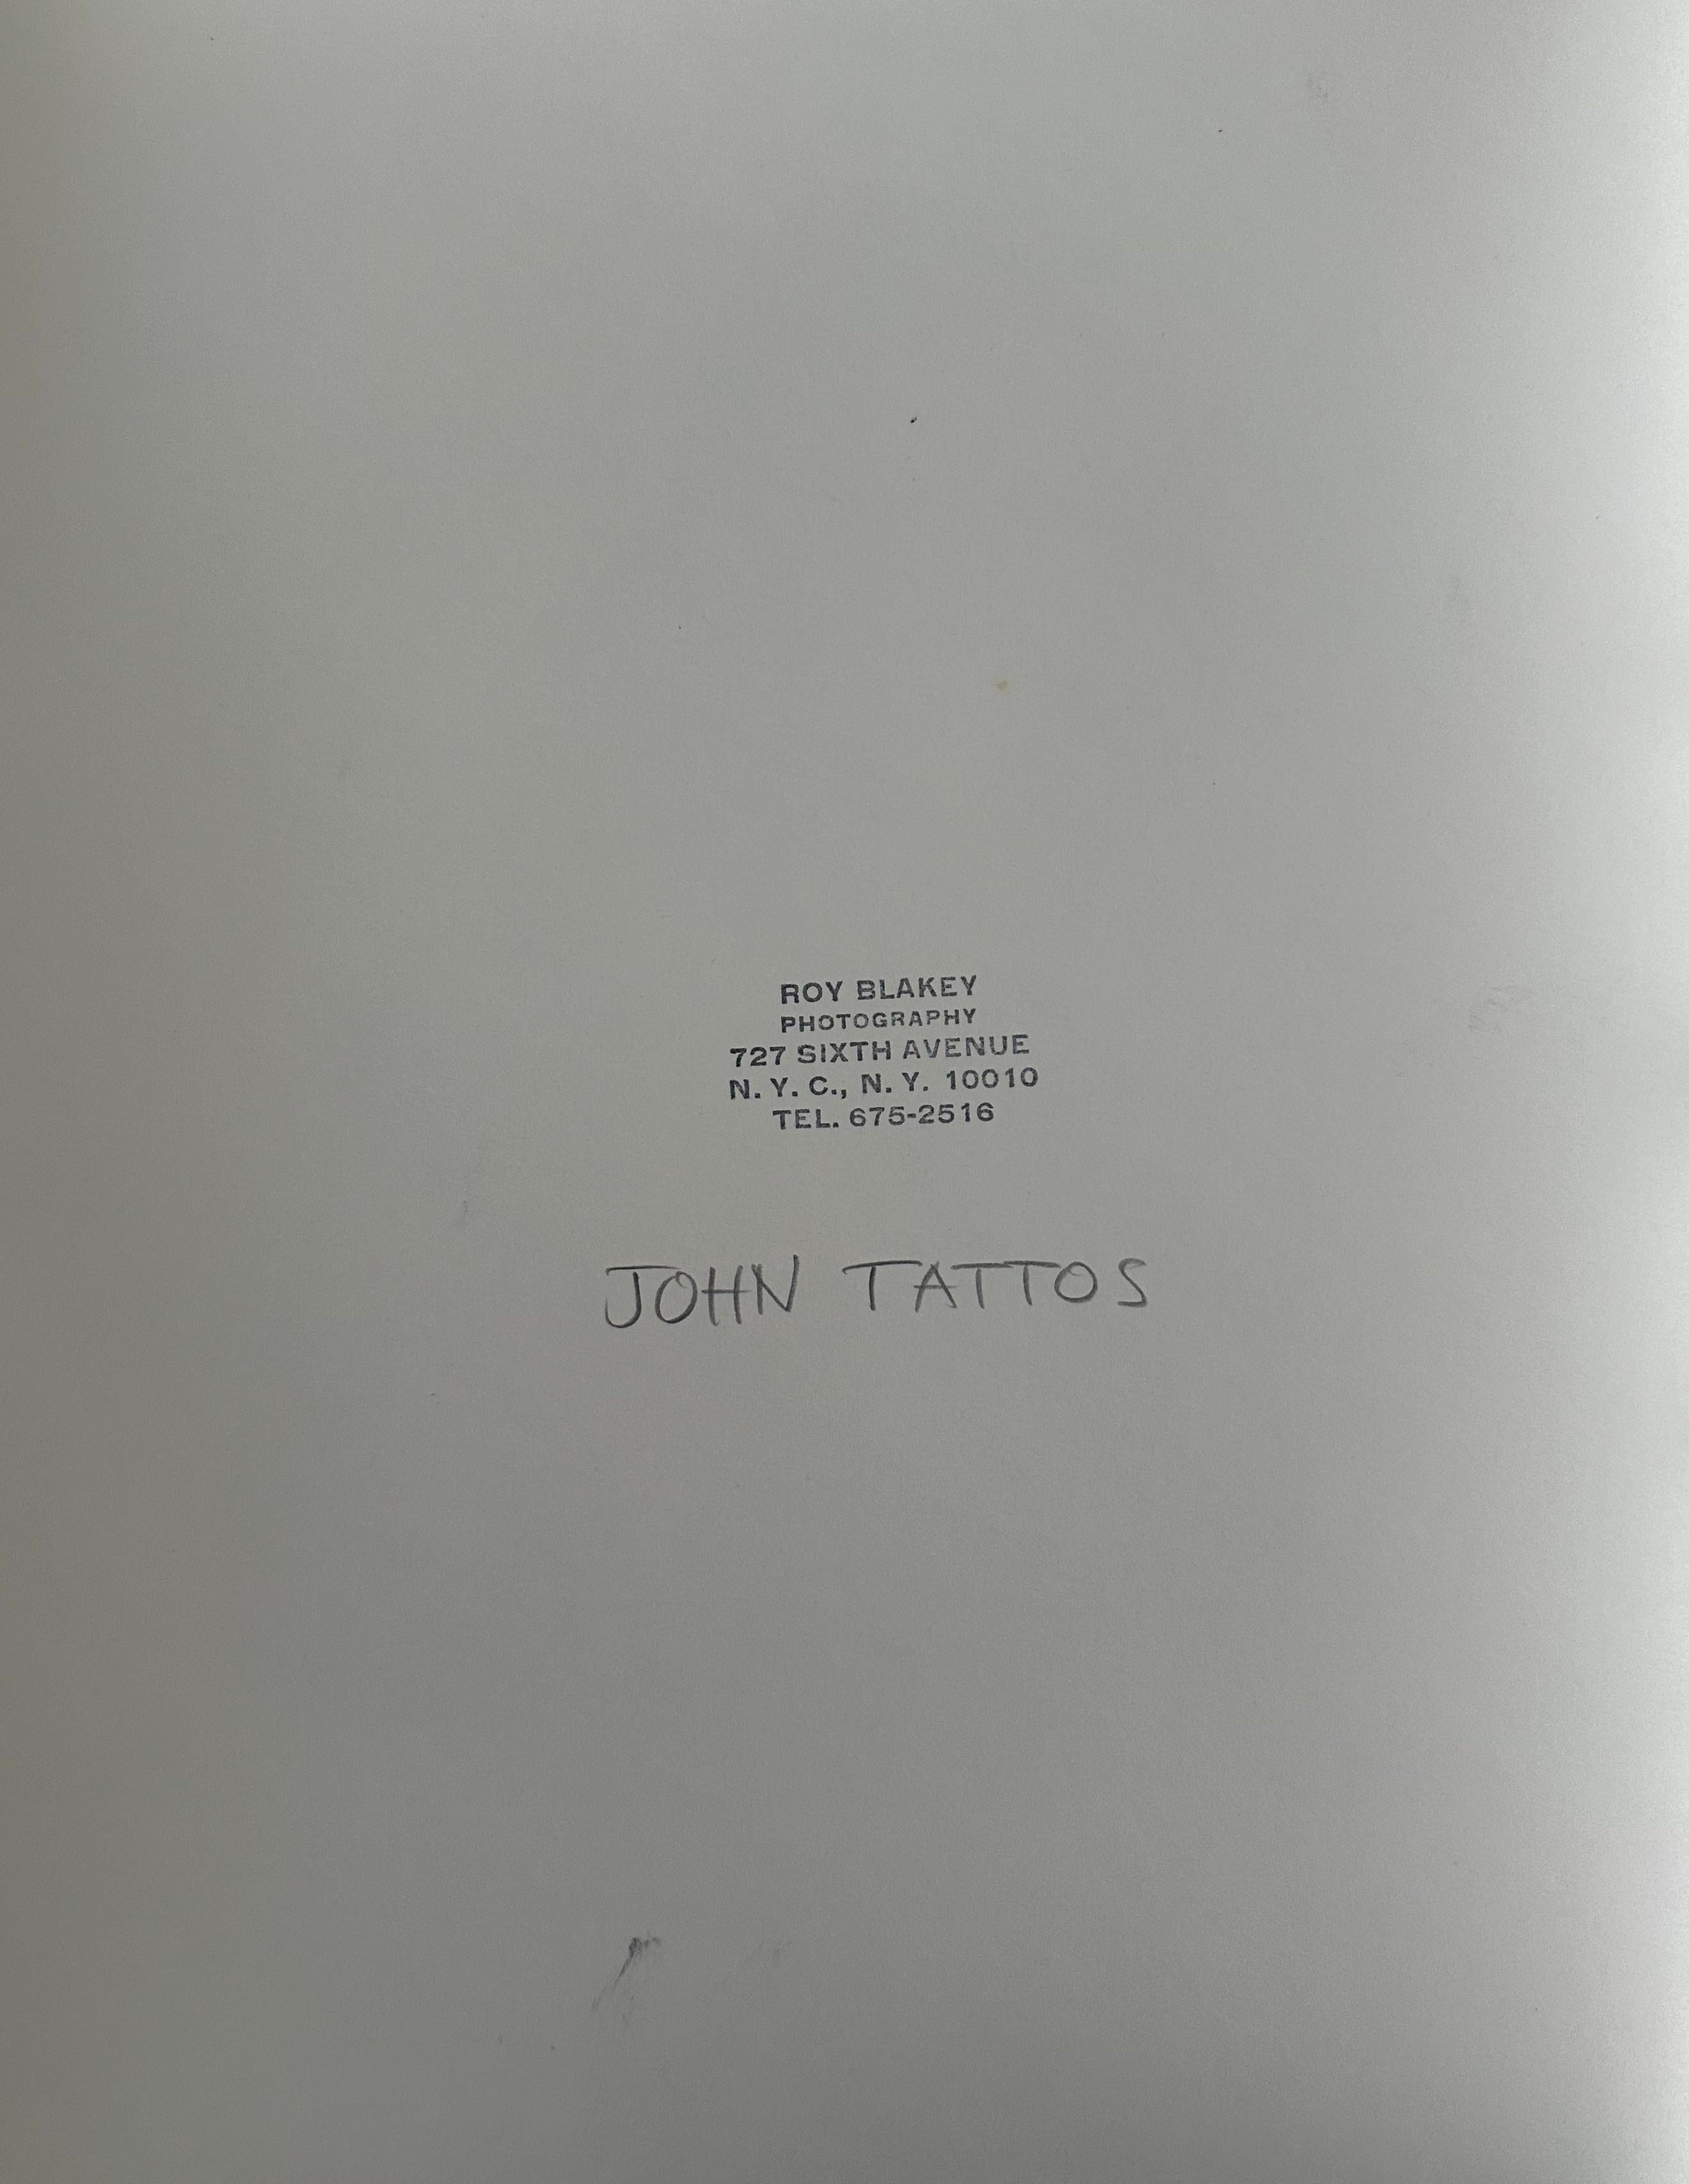 Roy Blakey (geb.1930). Porträt von John Tattos, 1974. Original-Fotodruck auf Papier, Bild misst 8,75 x 13 Zoll, Blatt misst 12 x 16 Zoll. Maße 17 x 21 Zoll gerahmt. Studio-Stempel auf der Rückseite. 

Ein anderes Bild aus dieser Fotosession wurde in